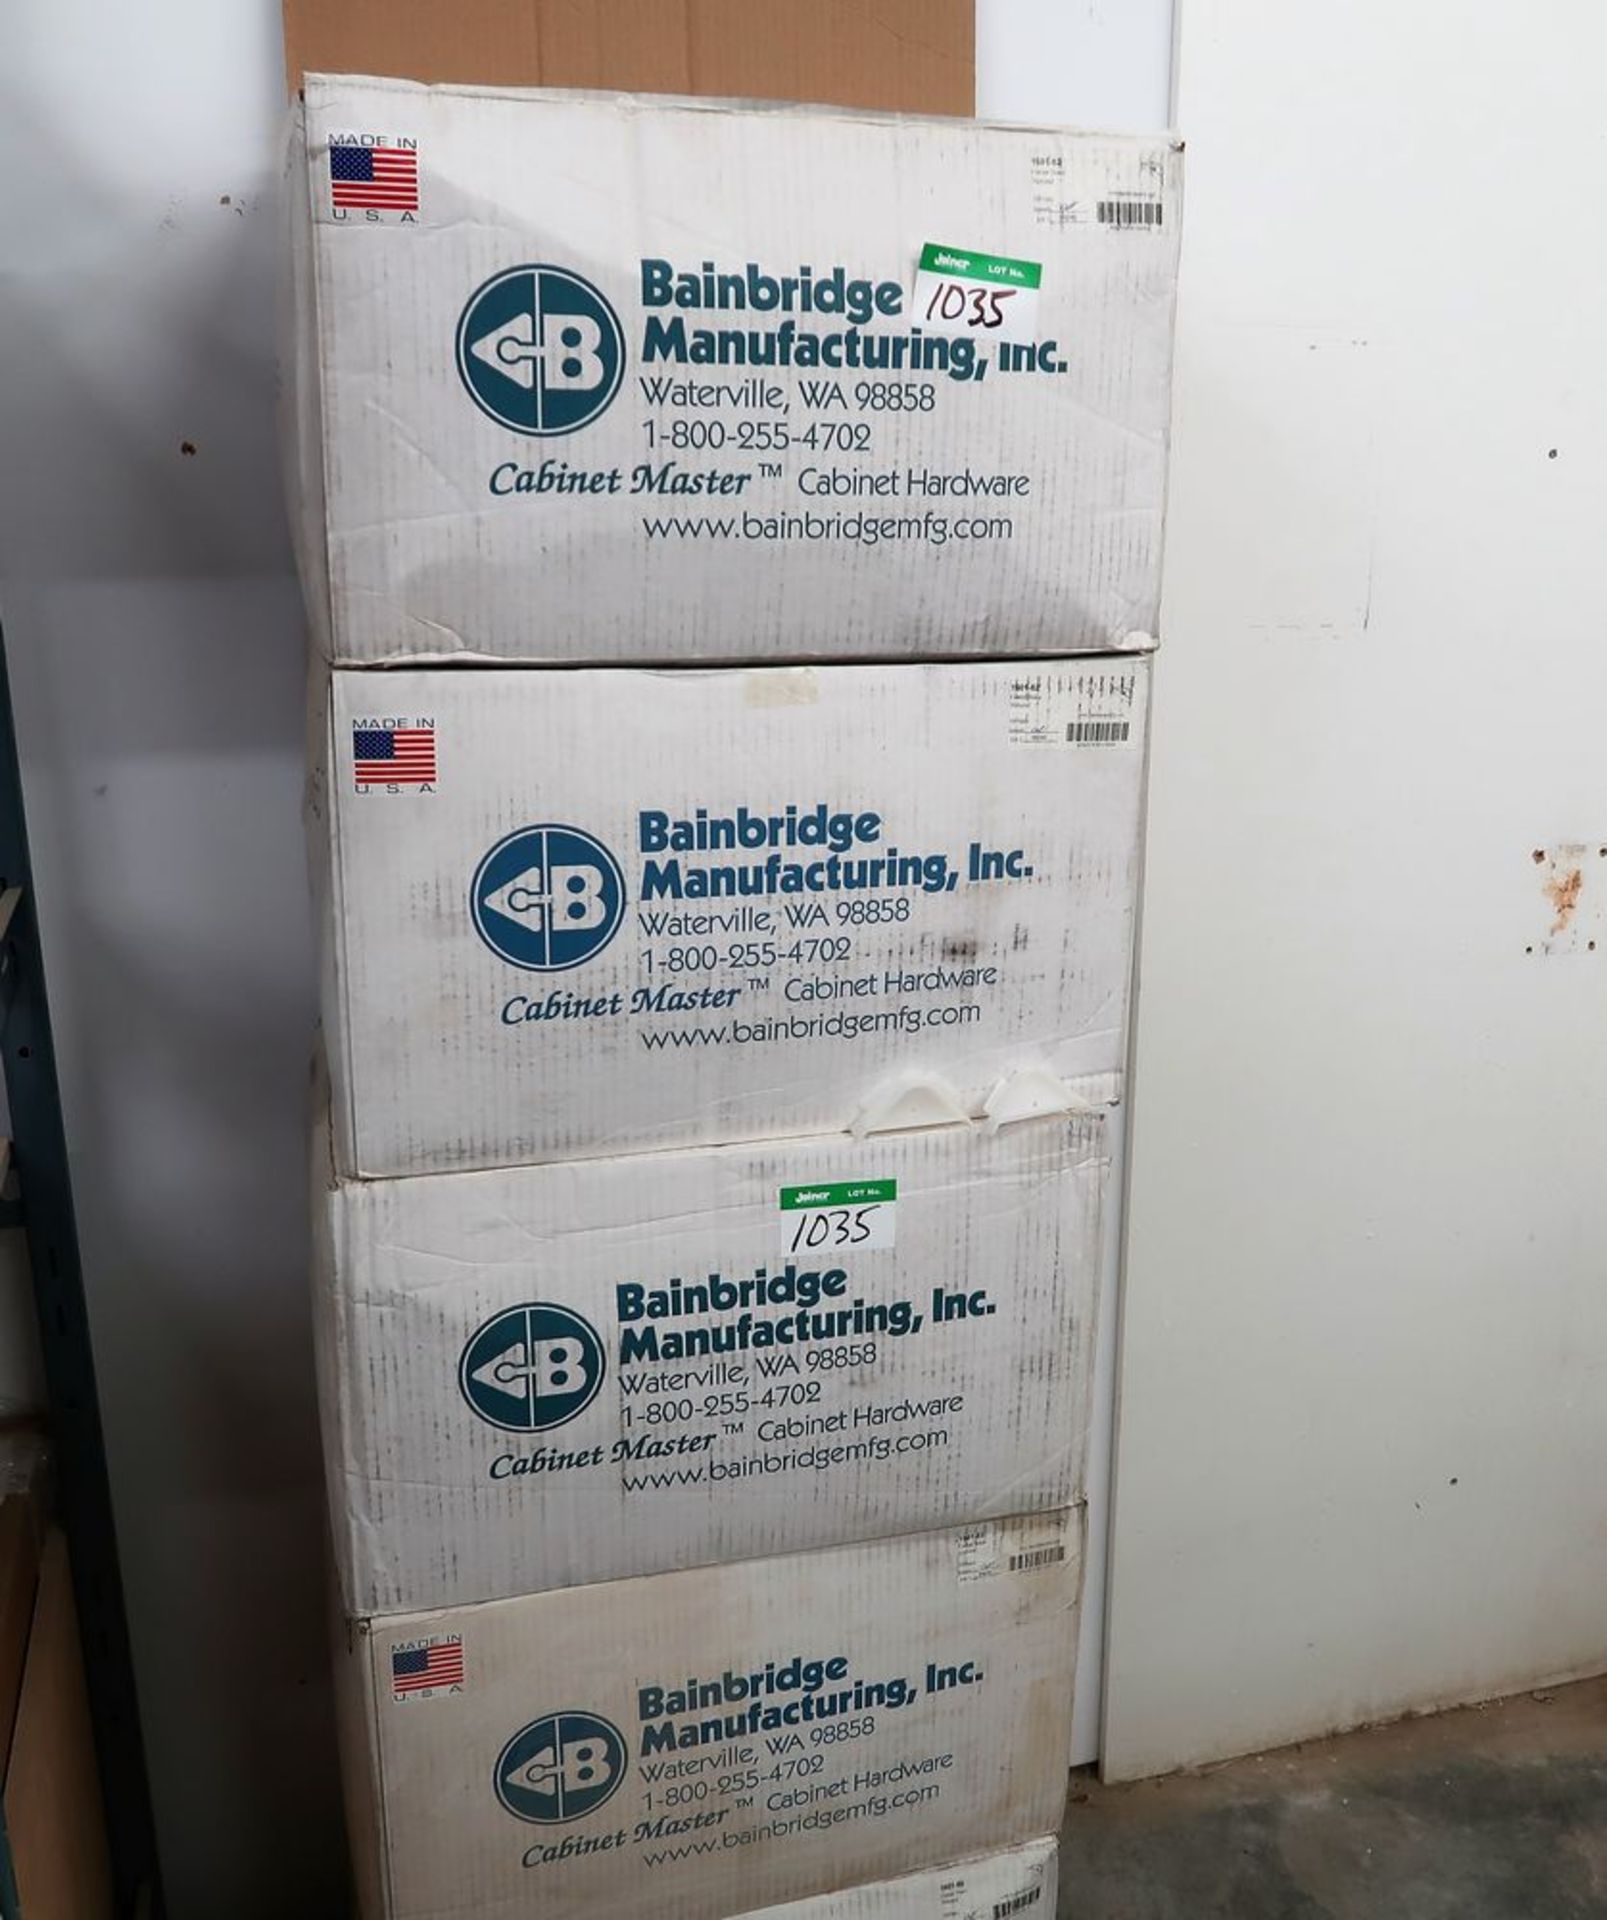 5 BOXES BAINBRIDGE 1601-62 PLASTIC CORNER BRACES (5000 PCS TOTAL)